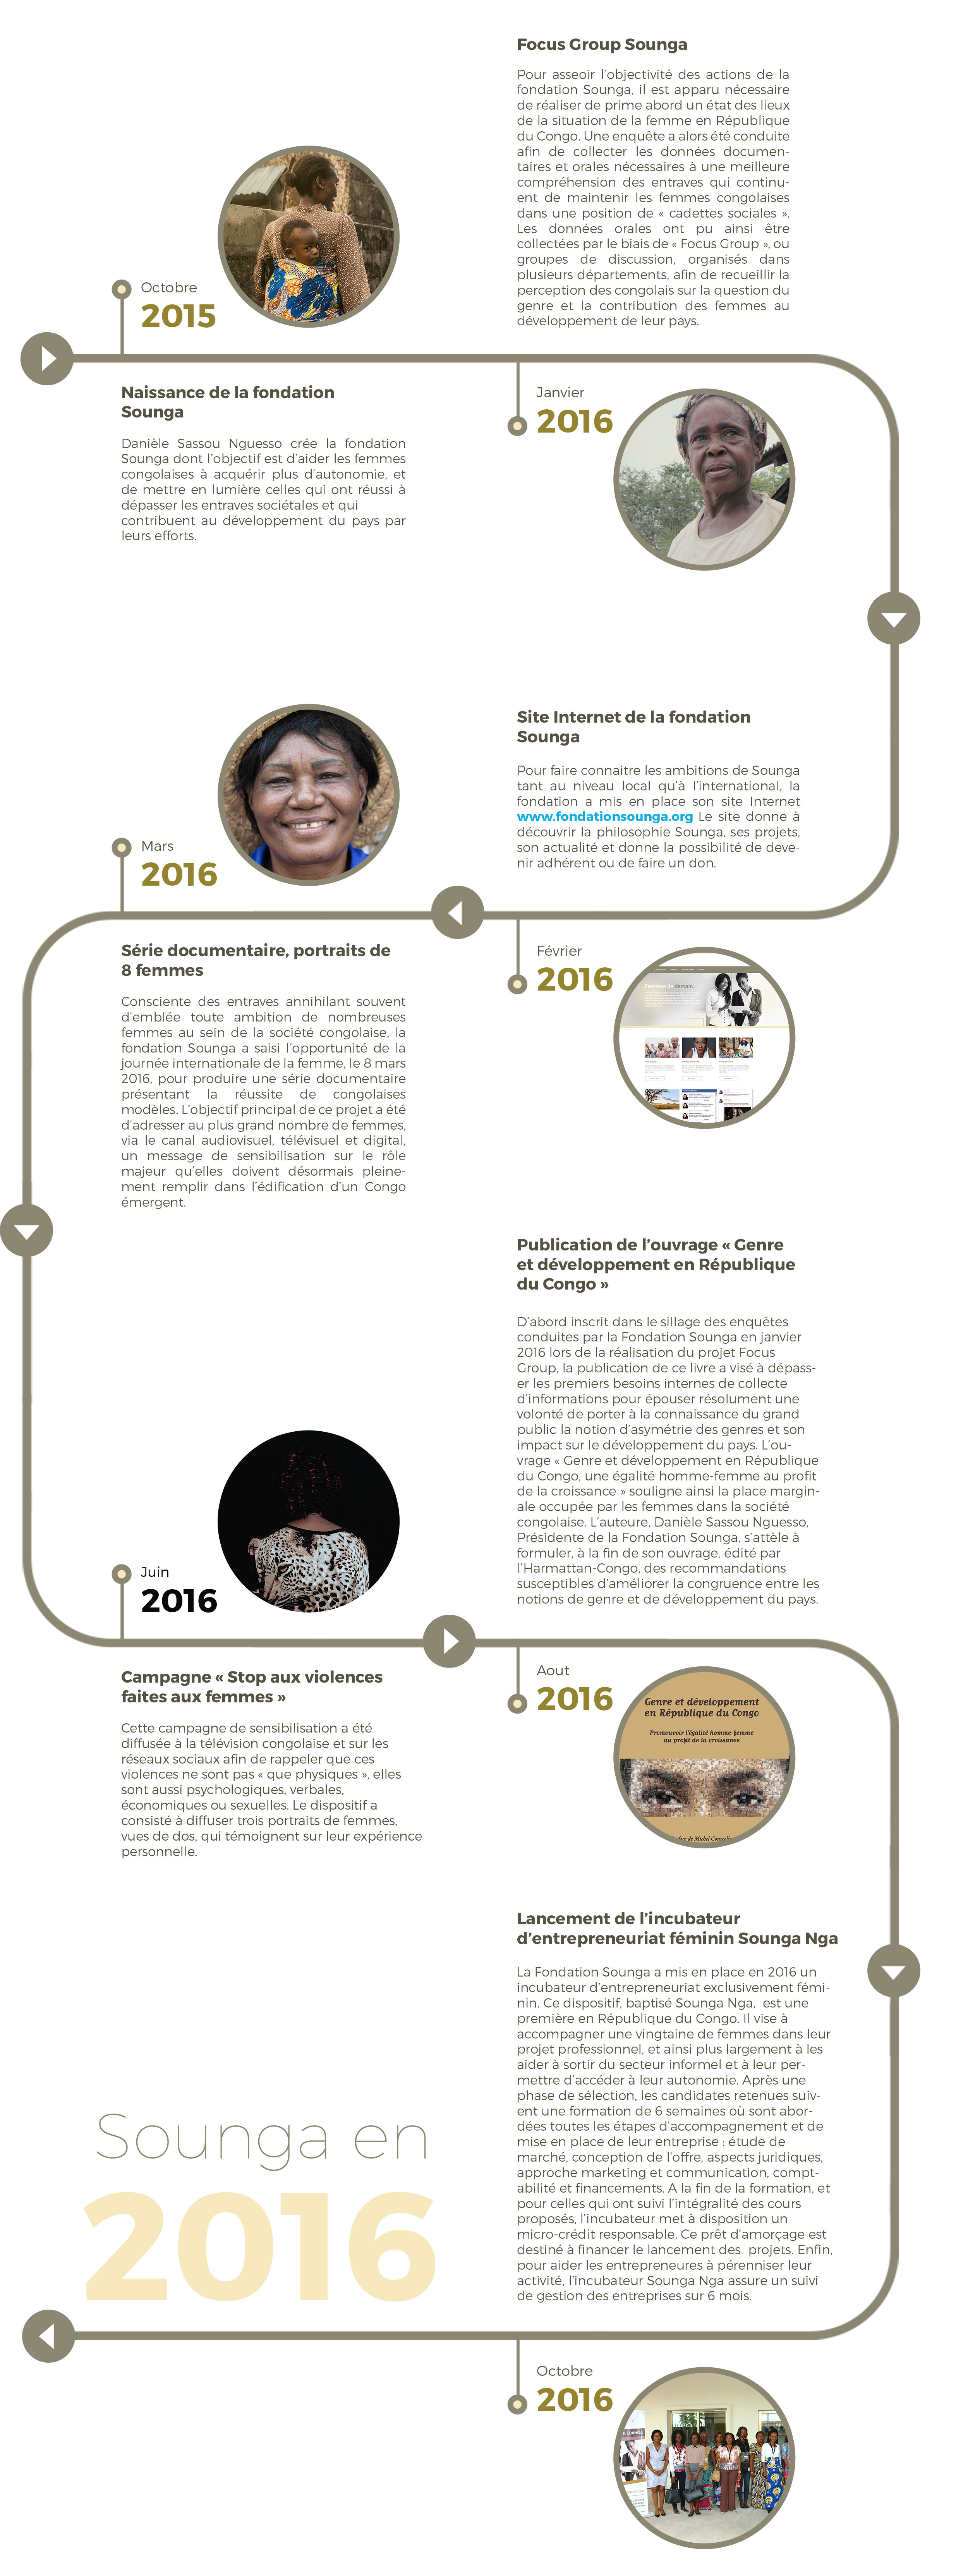 Les réalisations de la fondation Sounga en 2016